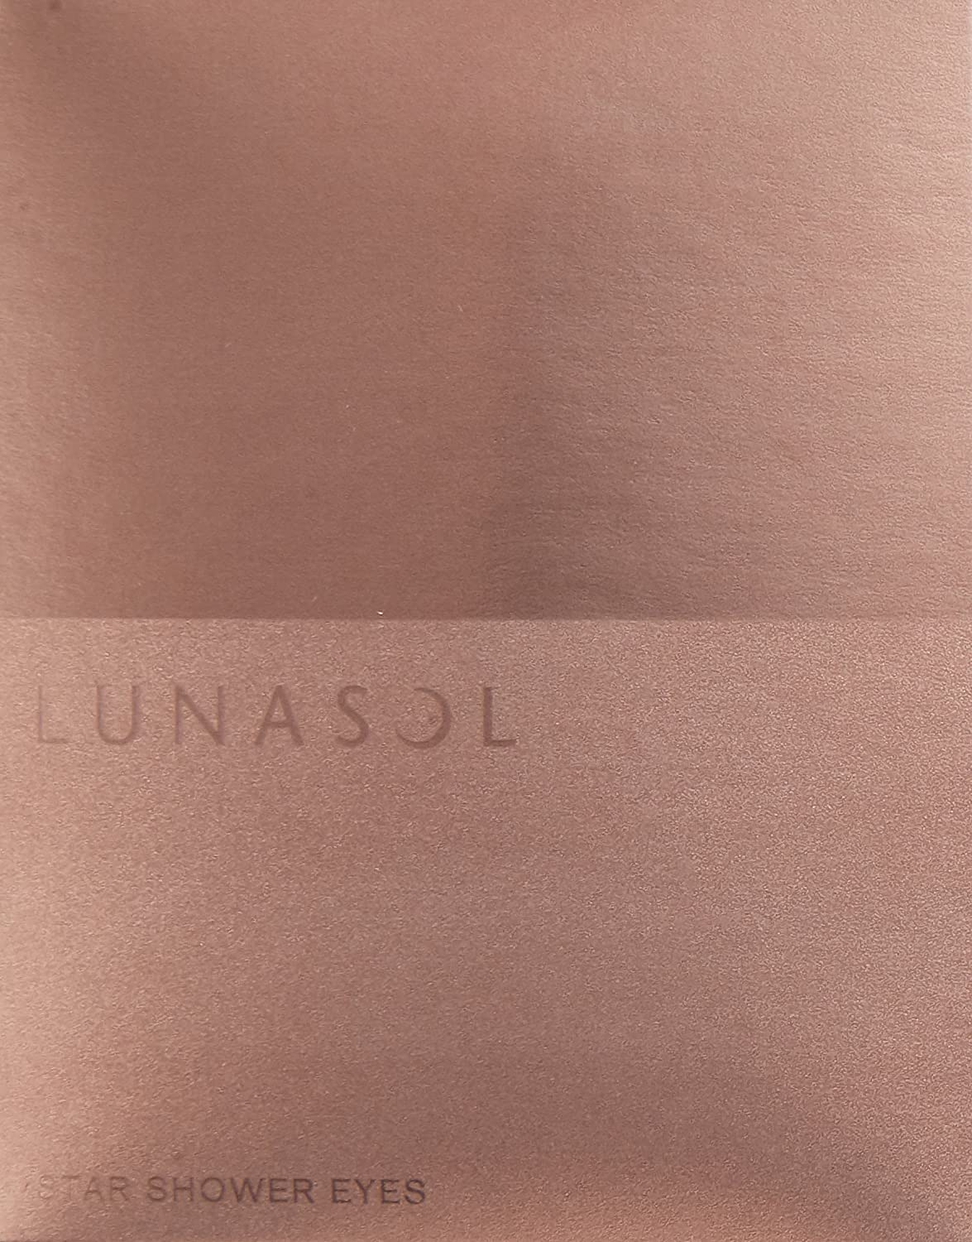 LUNASOL(ルナソル) スターシャワーアイズの商品画像サムネ2 